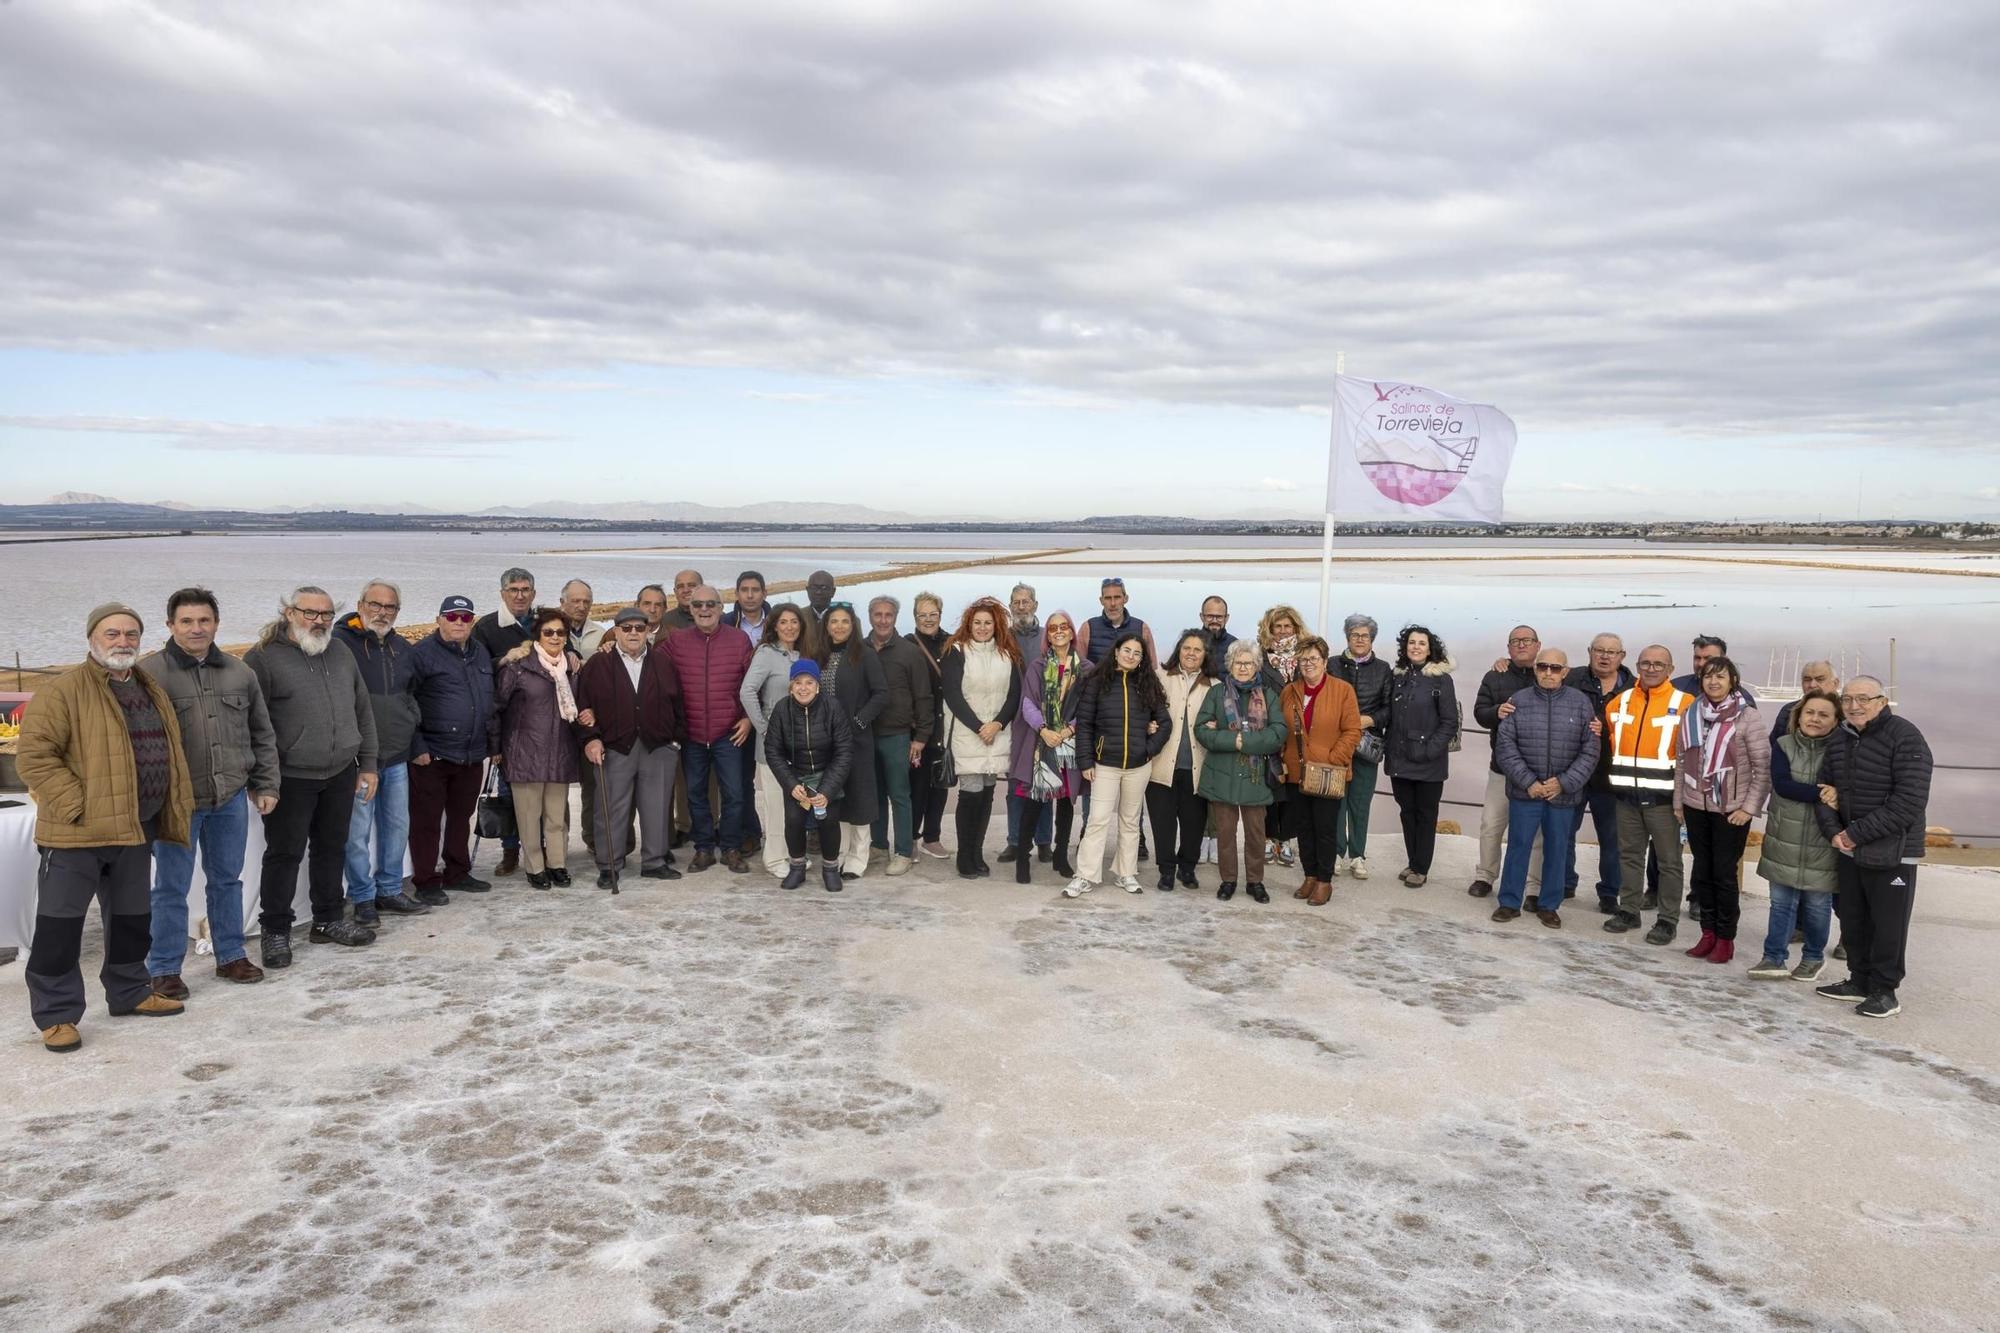 Conmemoración del 50 aniversario de la puesta en marcha del salmoreoducto que une Pinoso y las salinas de Torrevieja